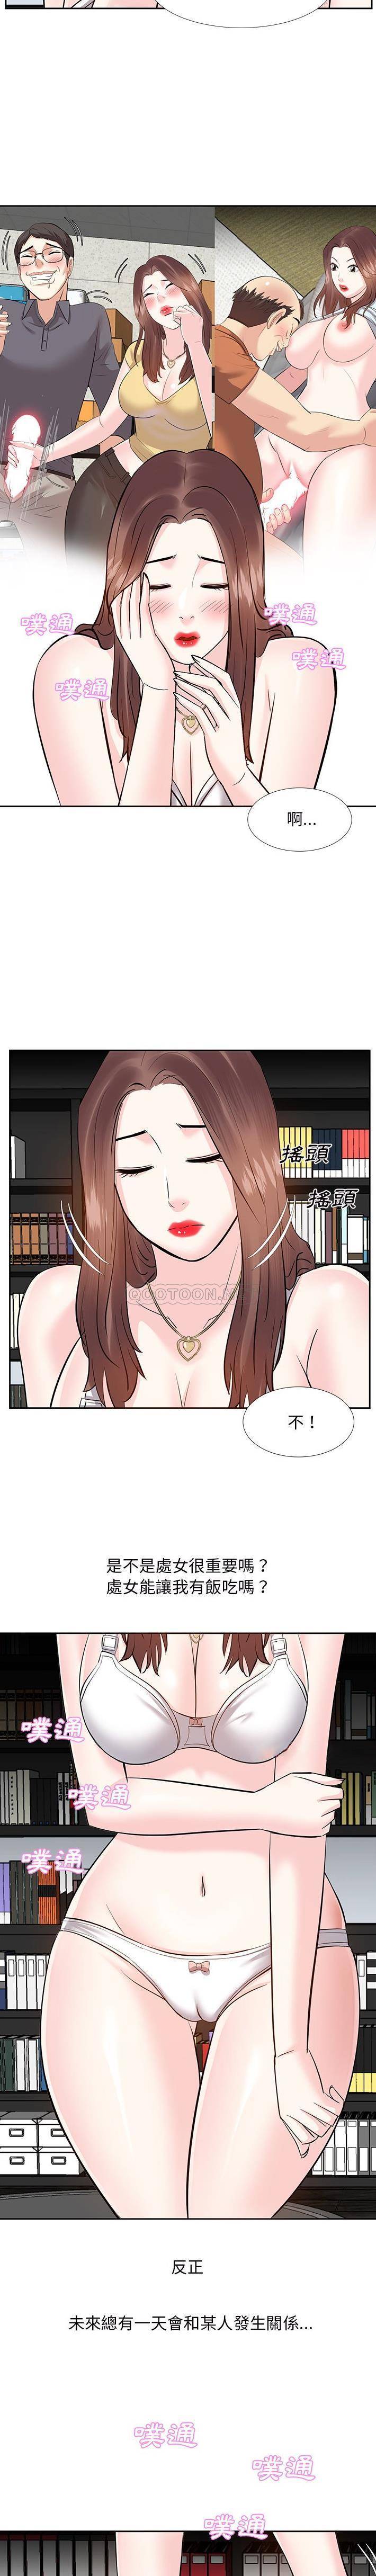 韩国污漫画 甜心幹爹 第9话 4